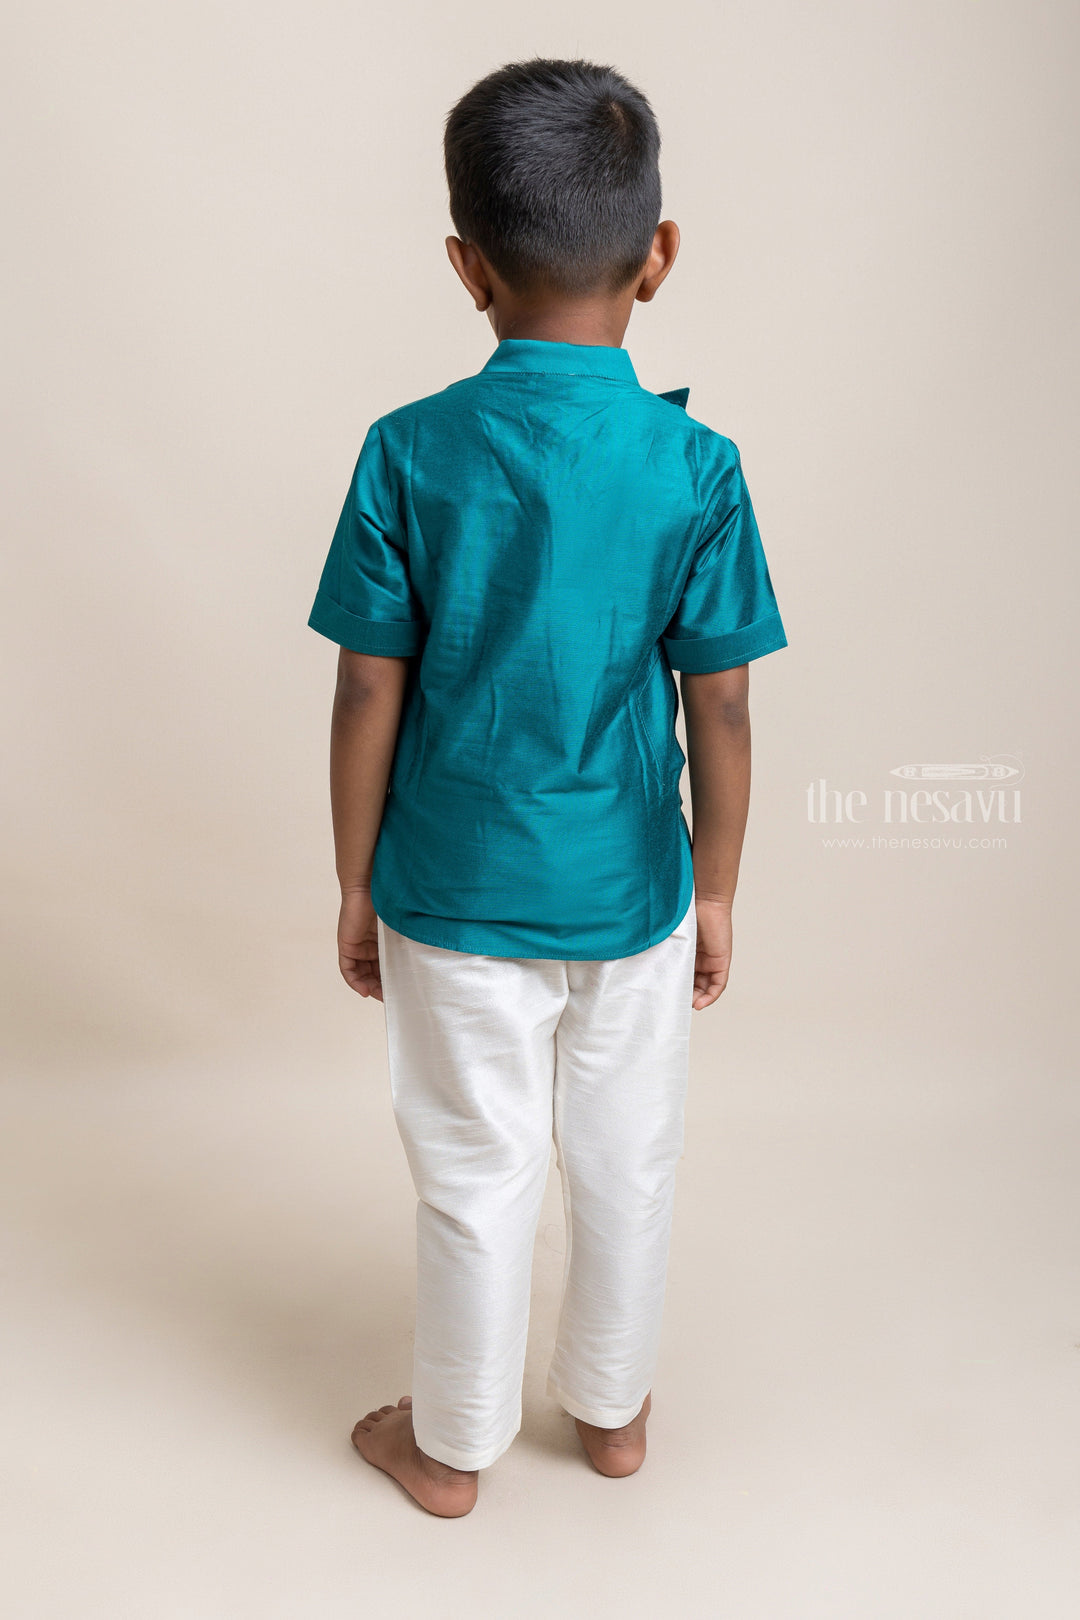 The Nesavu Boys Silk Shirt Gorgeous Peacock Blue Soft Cotton Shirt For Little Boys Nesavu Ethnic Cotton Shirts For Boys | Premium Boys Wear | The Nesavu